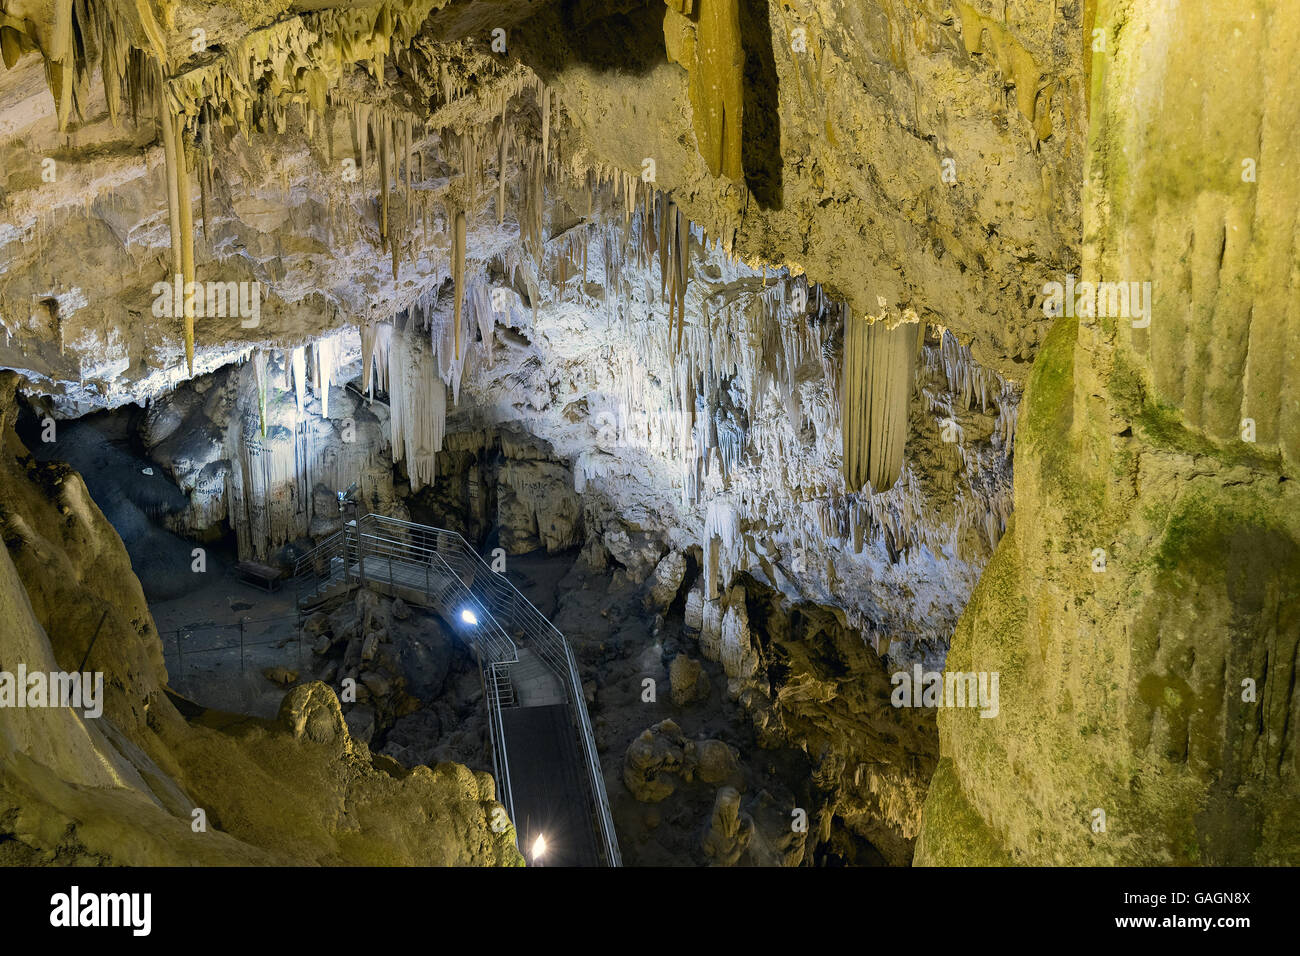 La cueva de Antiparos llena de estalactitas y estalagmitas. Foto de stock